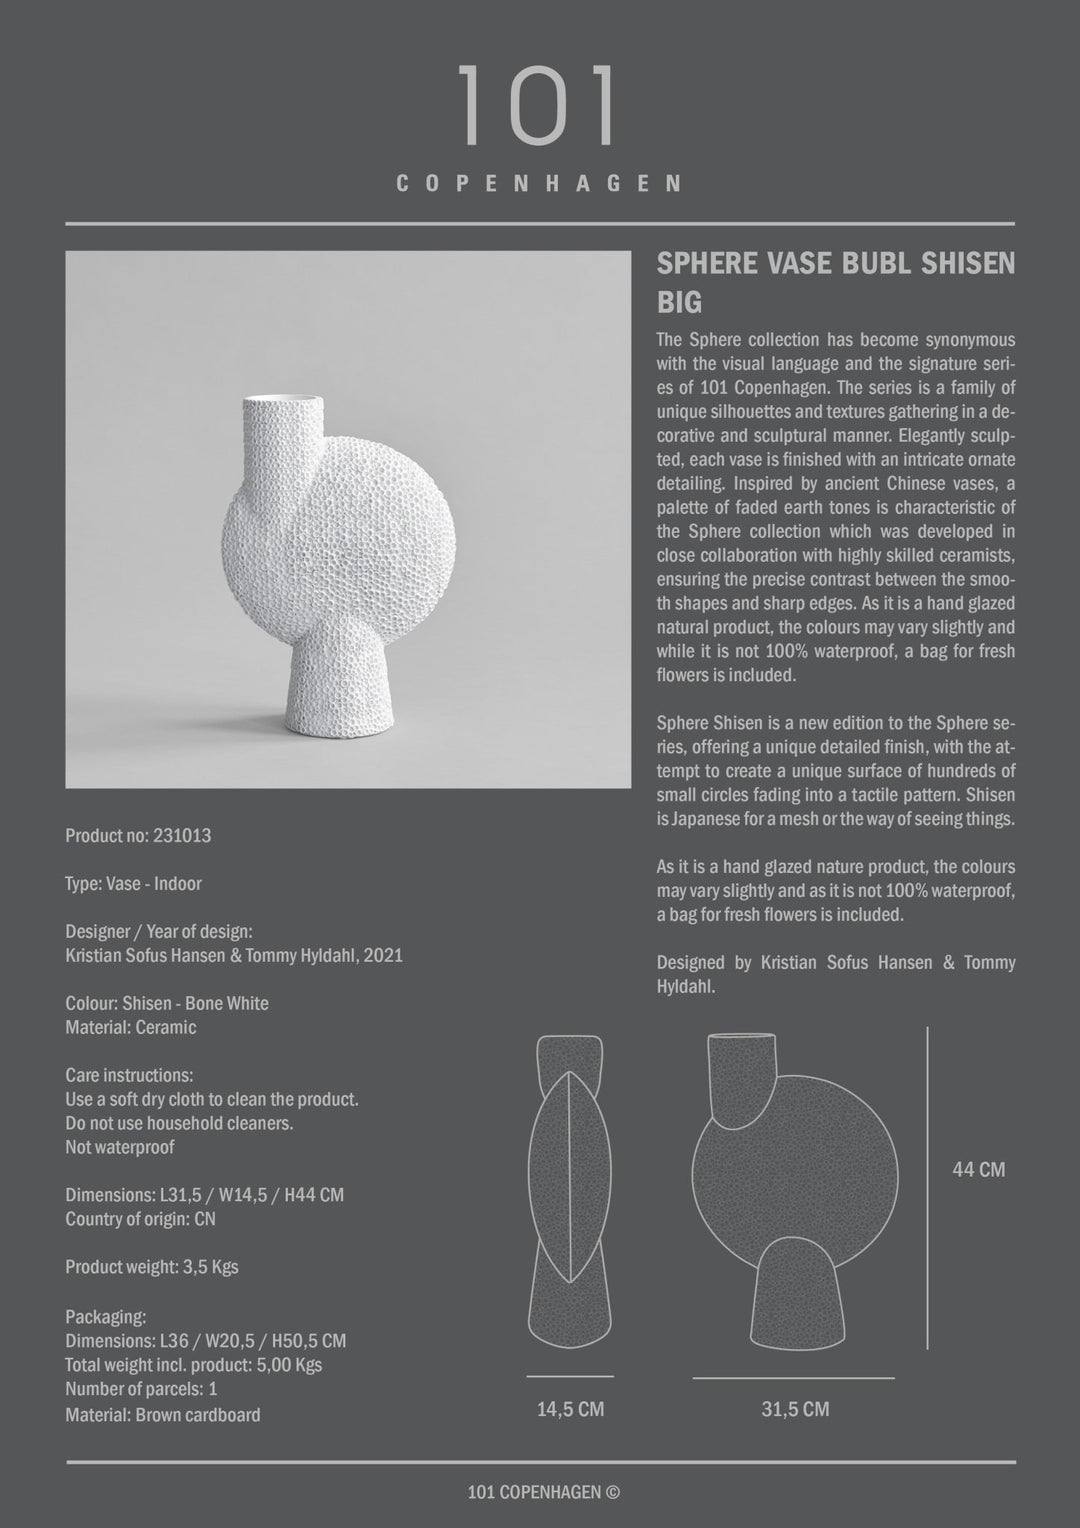 101 Copenhagen Sphere Vase Bubl Shisen - $85.00 - $250.00